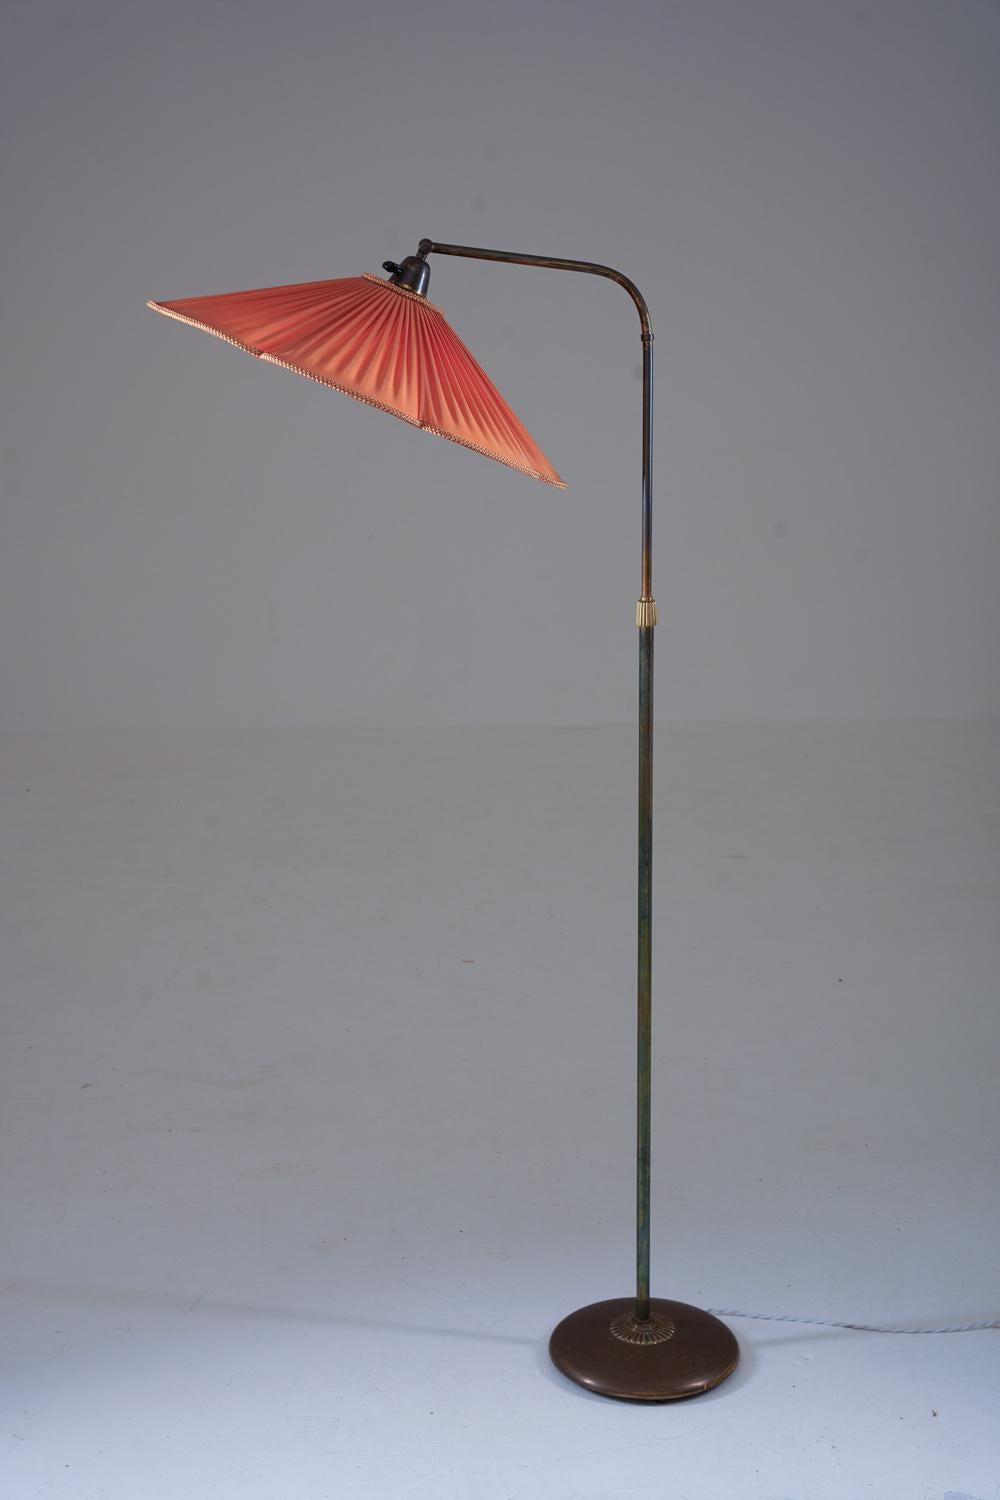 Charmant lampadaire moderne suédois de Nordiska Kompaniet (NK), Suède, années 1940.
La lampe se compose d'une base et d'une tige en laiton, supportant un bras pivotant qui soutient l'abat-jour.
La hauteur est réglable entre 130 et 170 cm. 

Condit :